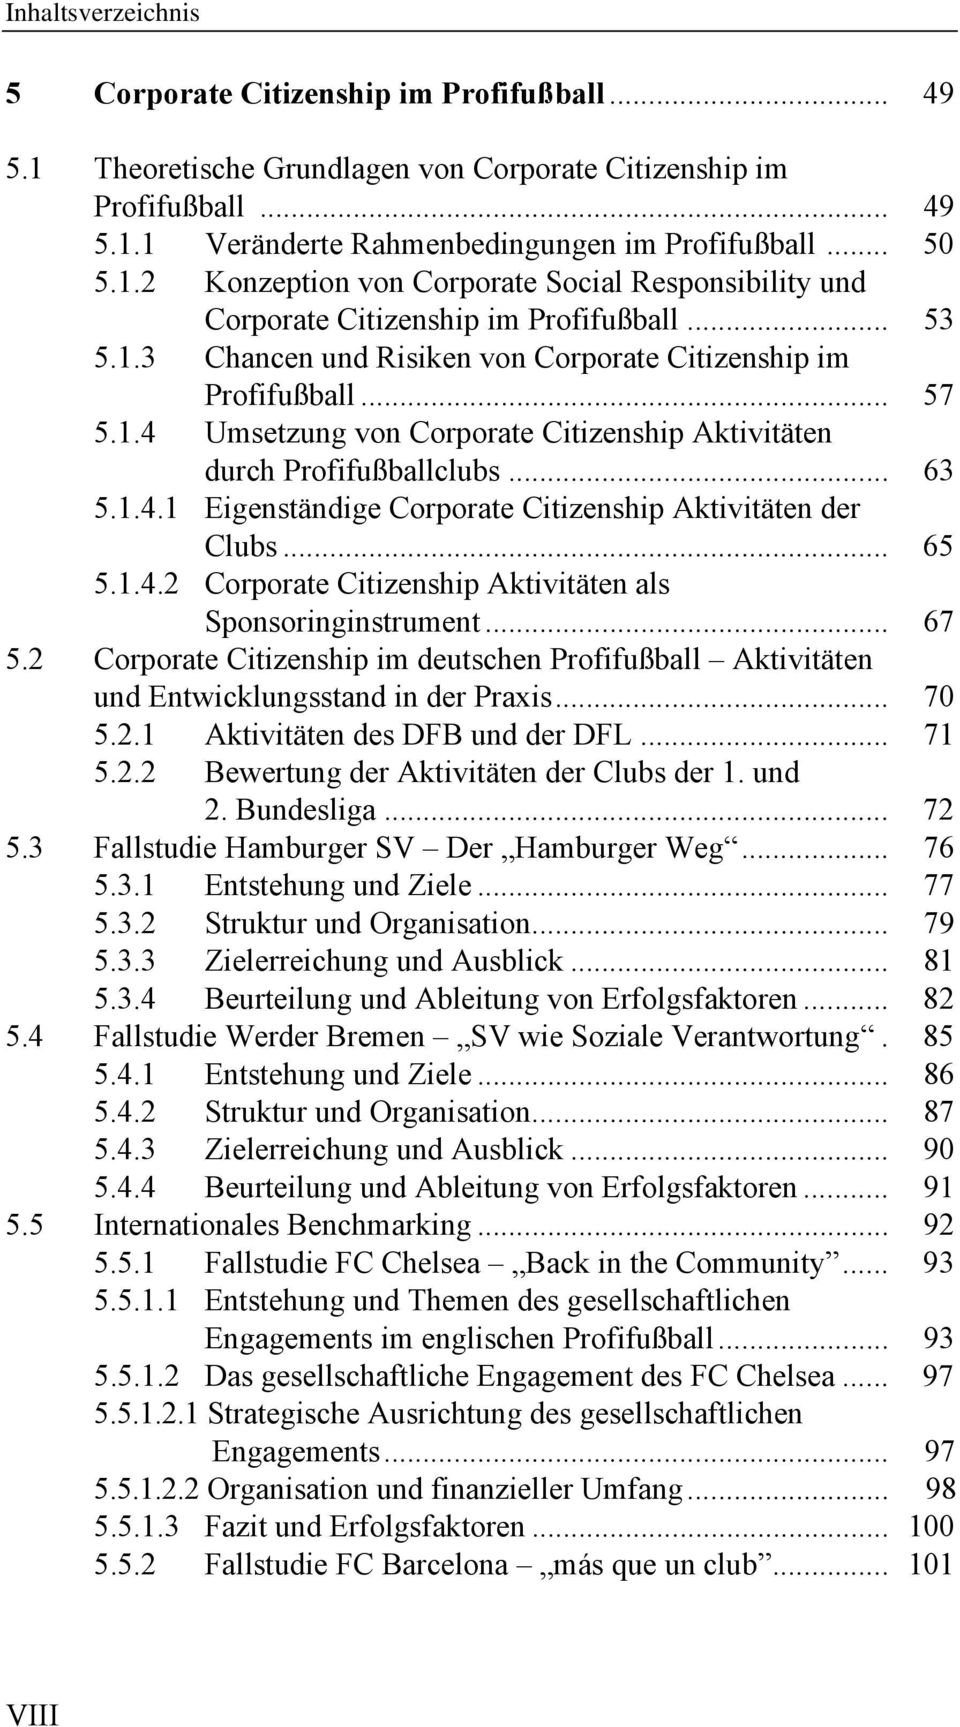 .. 65 5.1.4.2 Corporate Citizenship Aktivitäten als Sponsoringinstrument... 67 5.2 Corporate Citizenship im deutschen Profifußball Aktivitäten und Entwicklungsstand in der Praxis... 70 5.2.1 Aktivitäten des DFB und der DFL.